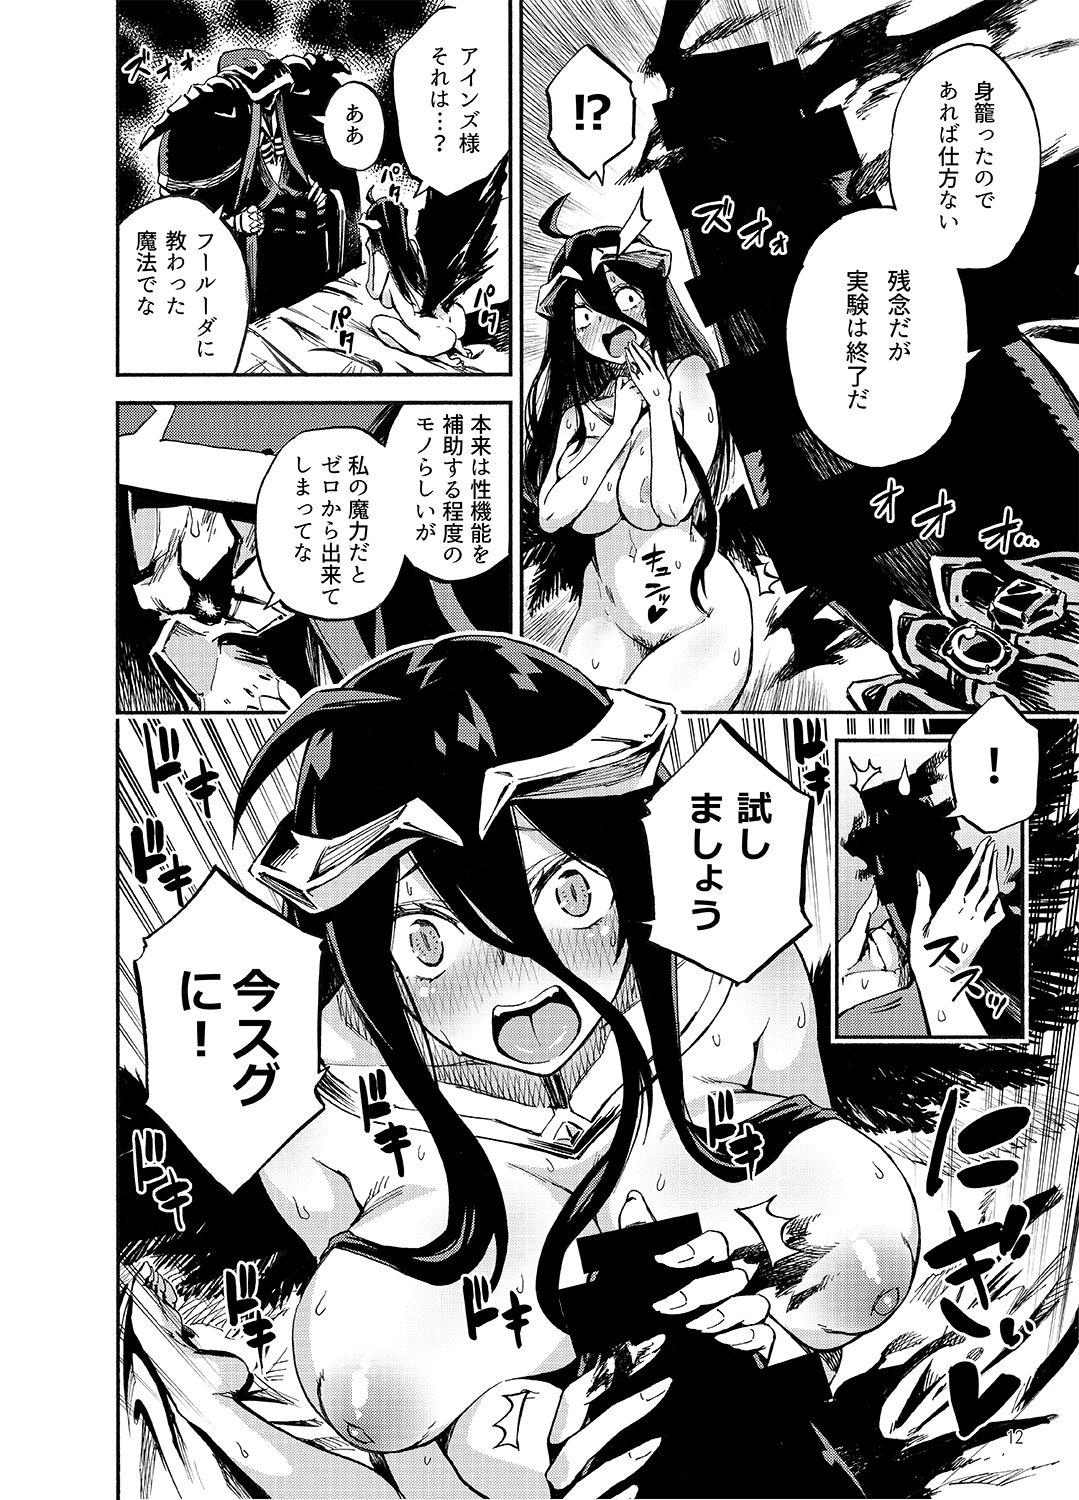 Cdmx Albedo wa Goshujin-sama no Yume o Miru ka? - Overlord Buceta - Page 11